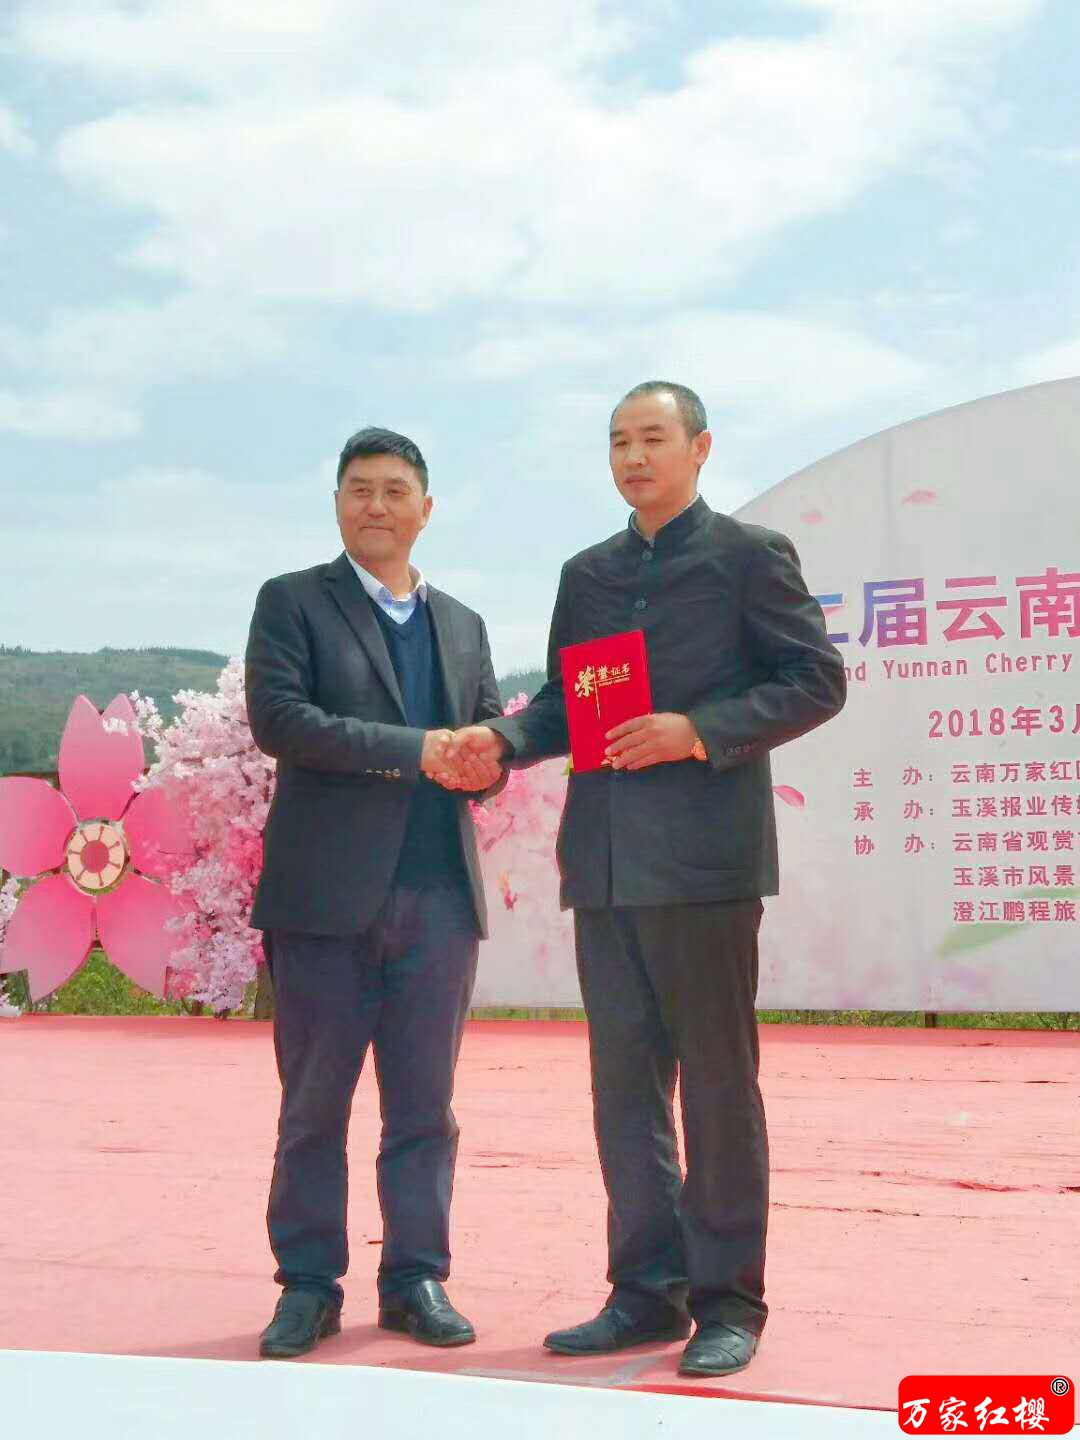 第二届云南抚仙湖樱花节“美文大赛”圆满落幕